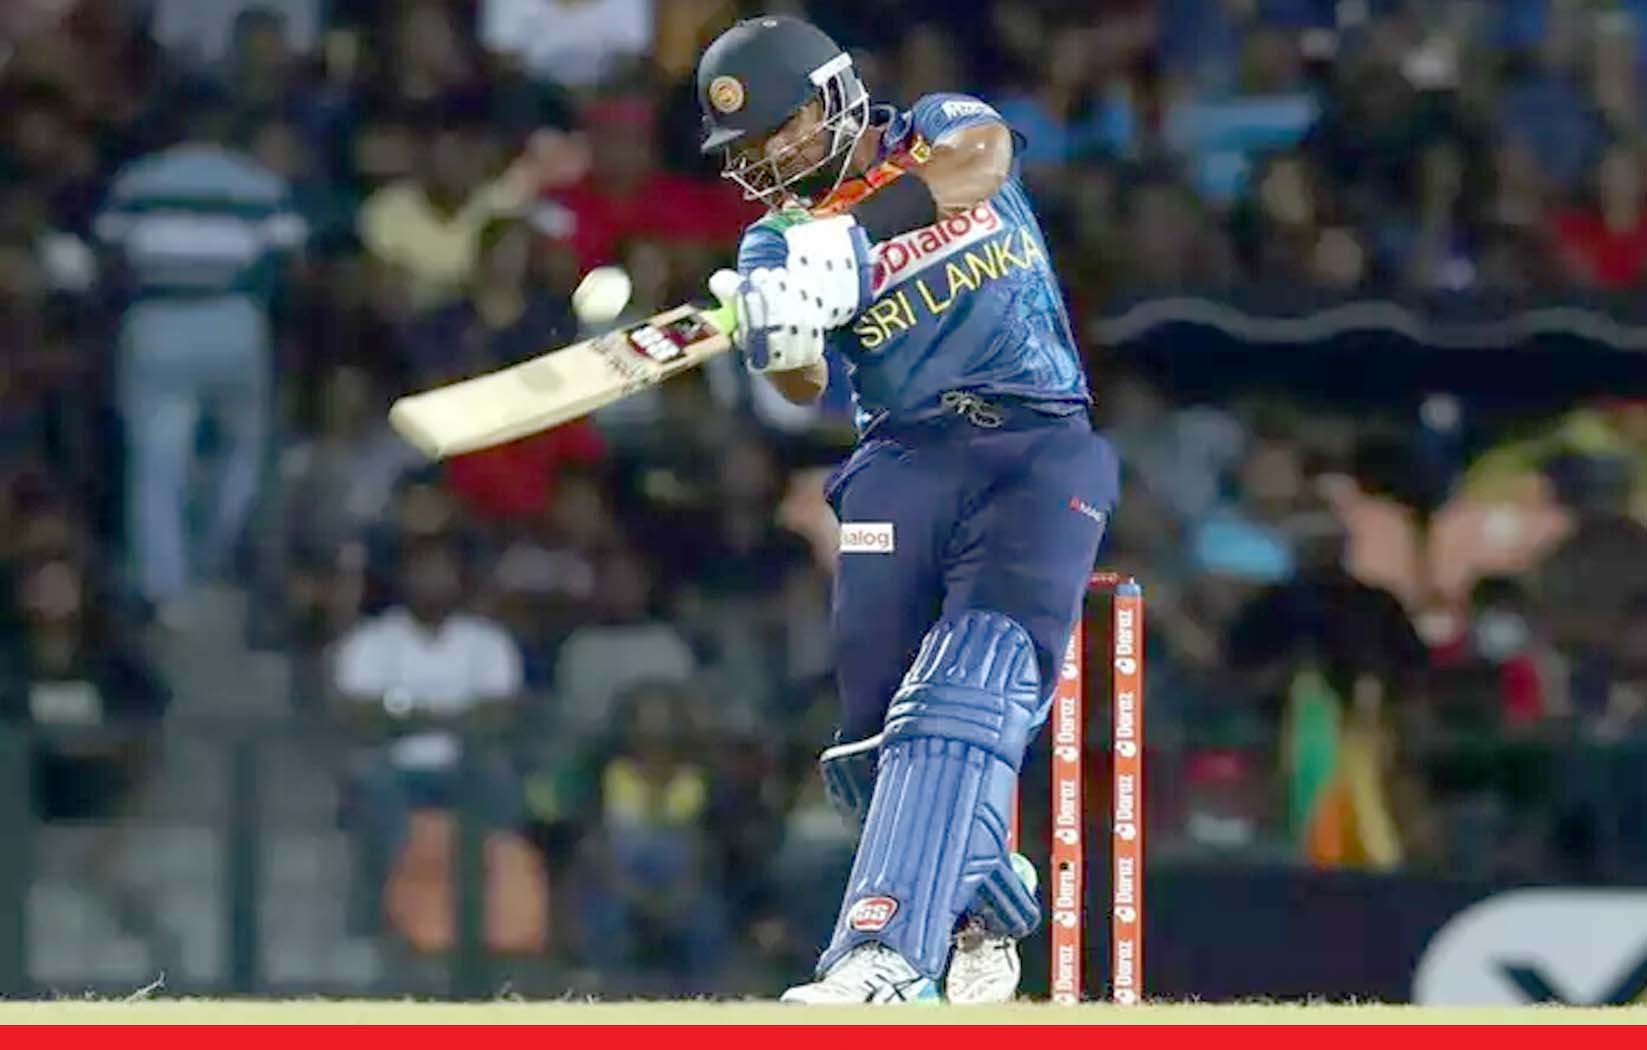 श्रीलंका ने अंतिम टी20 मैच में ऑस्ट्रेलिया पर रोमांचक जीत दर्ज की. अंतिम 3 ओवर में 59 रन बनाए